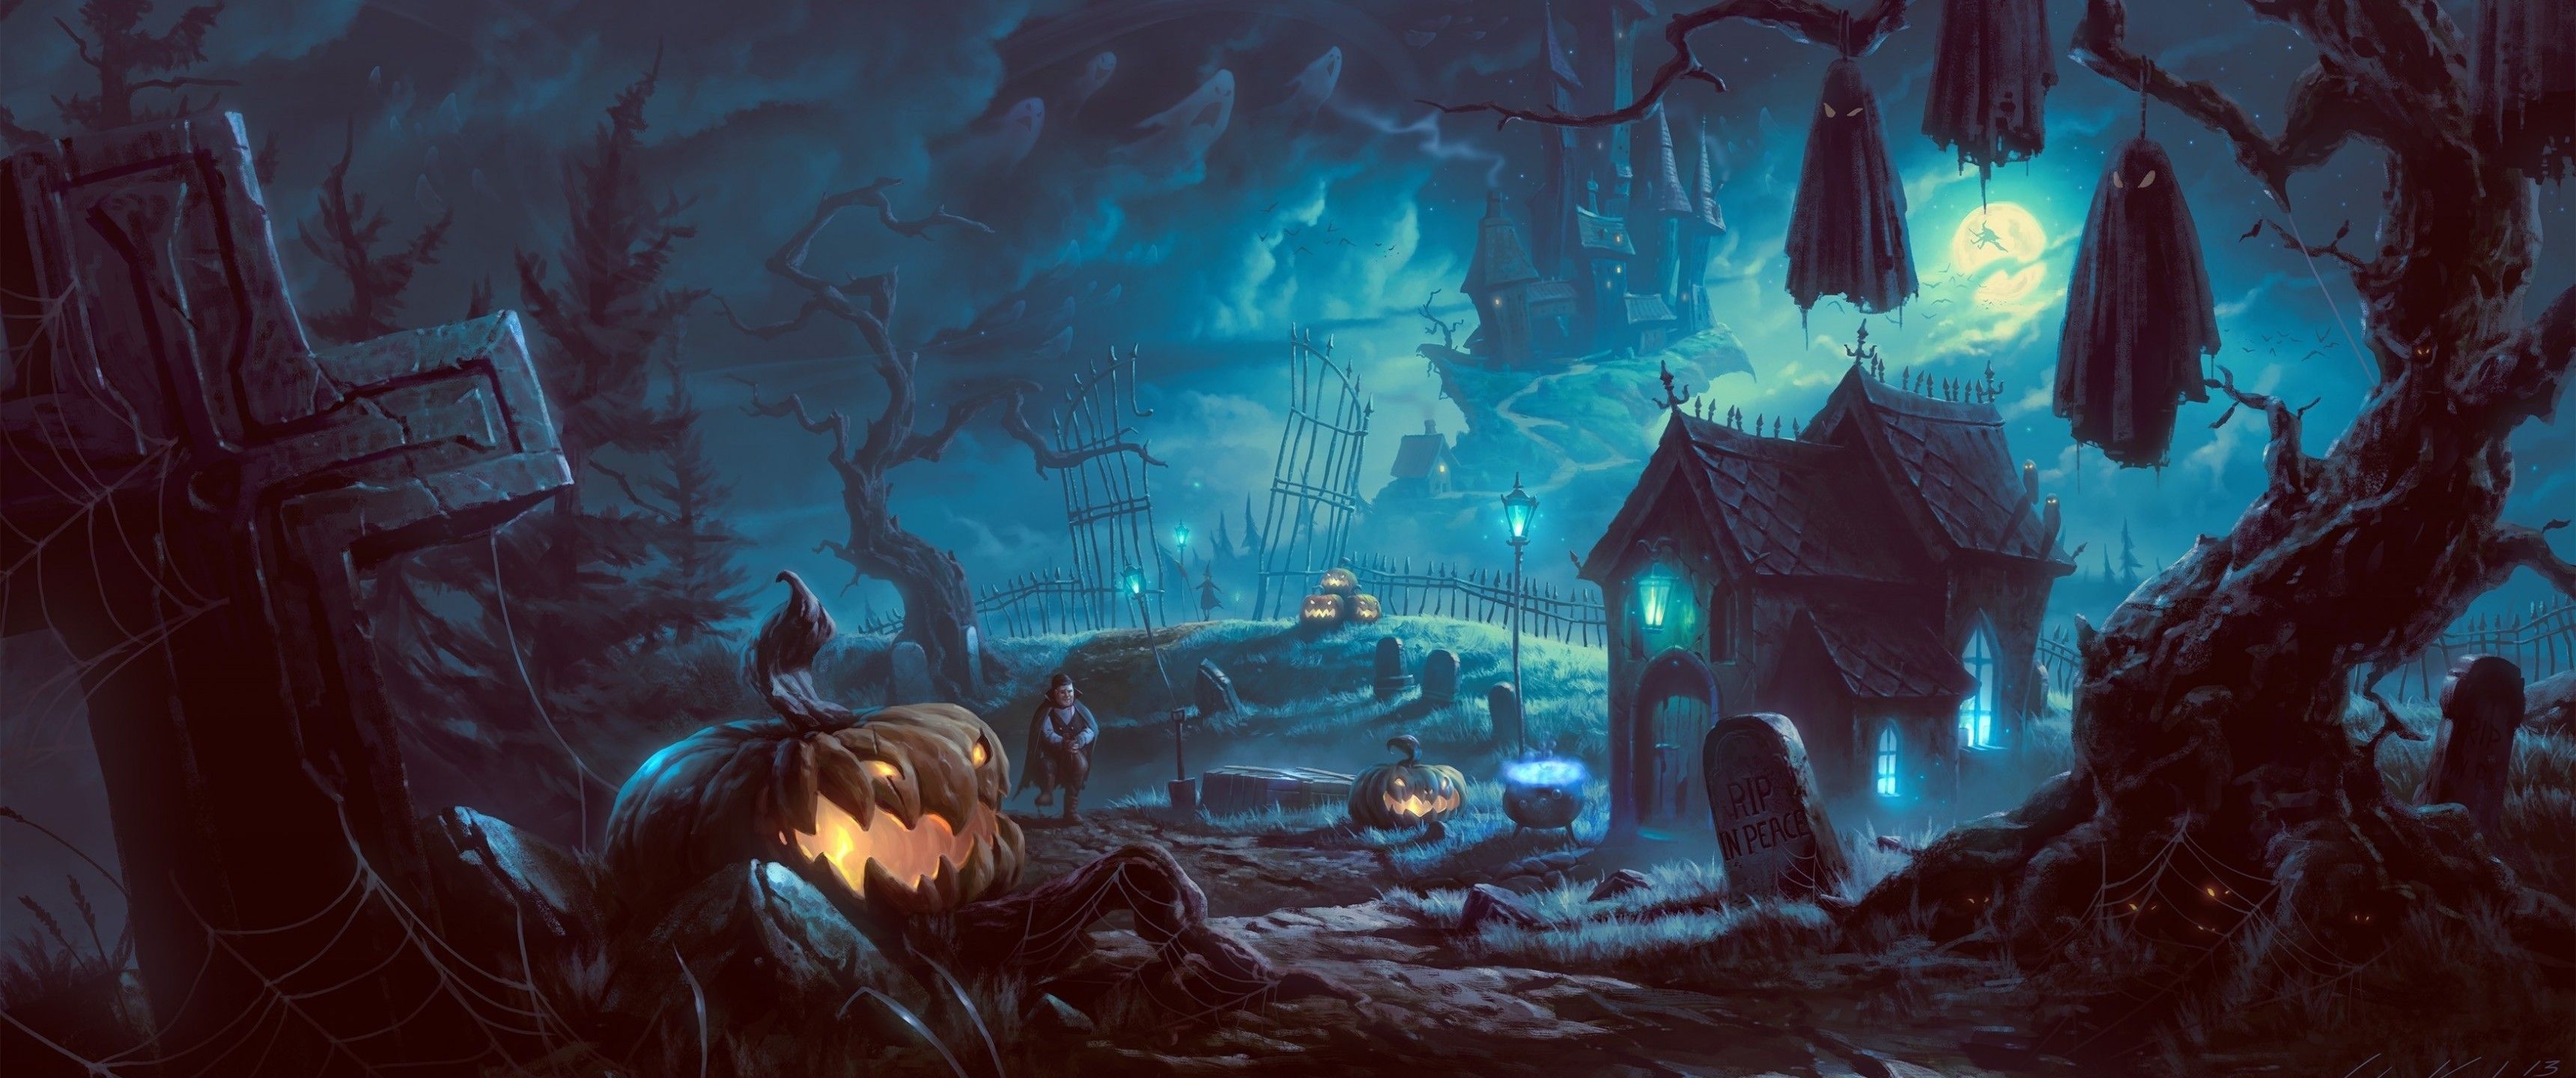 Download 3440x1440 Halloween, Graveyard, Pumpkins, Vampire, Abandoned Wallpaper